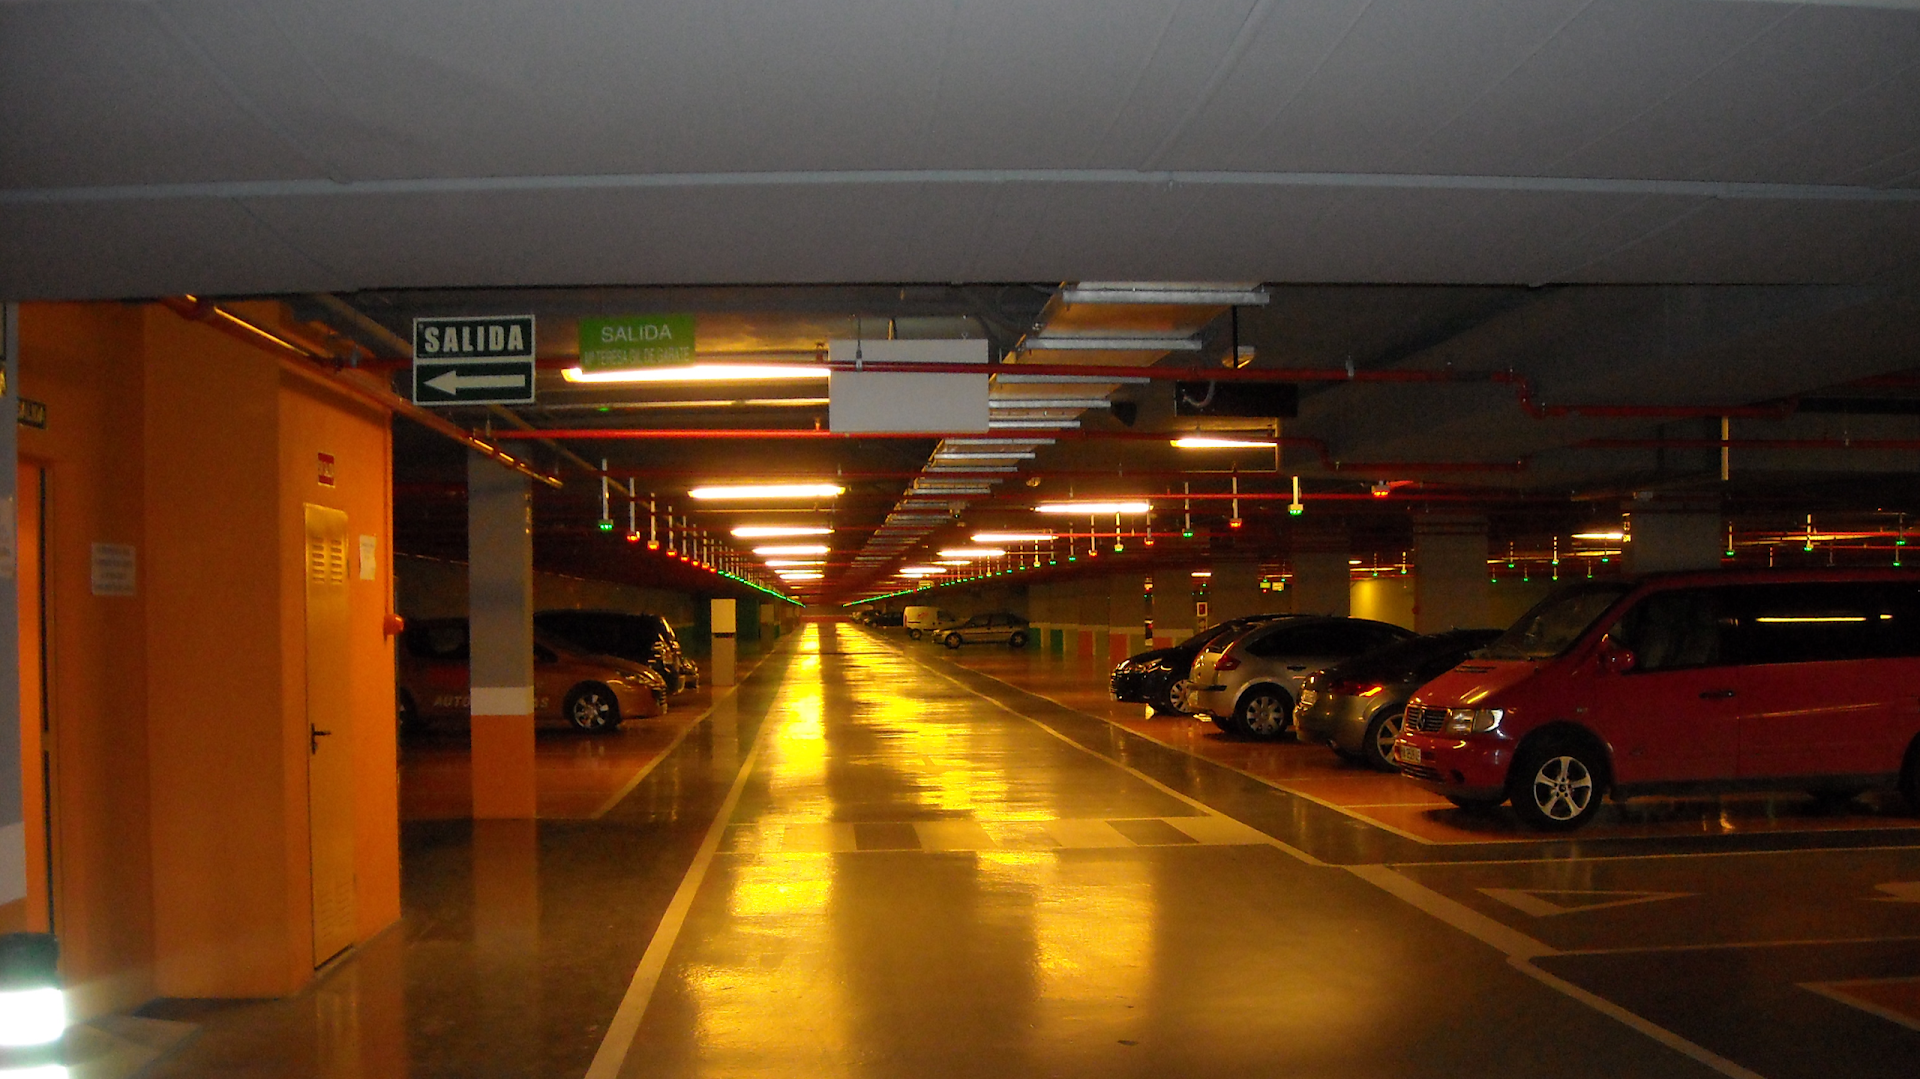 Parking Central Gran Vía - Logroño